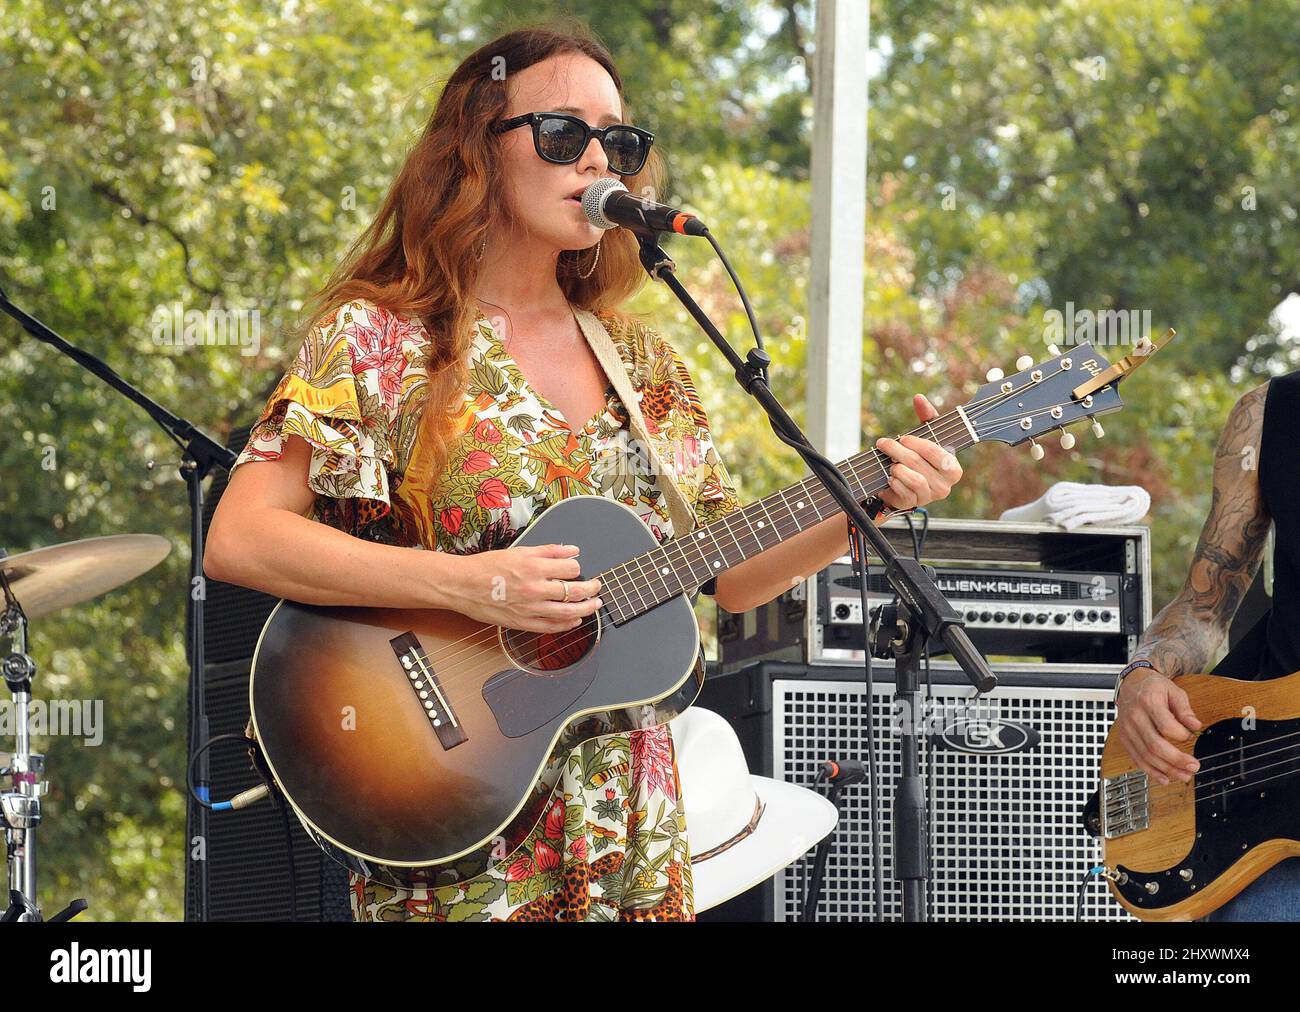 Courtney Jaye si esibisce dal vivo in occasione del decimo festival musicale annuale Austin City Limits, che si svolge presso lo Zilker Park in Texas, USA. Foto Stock